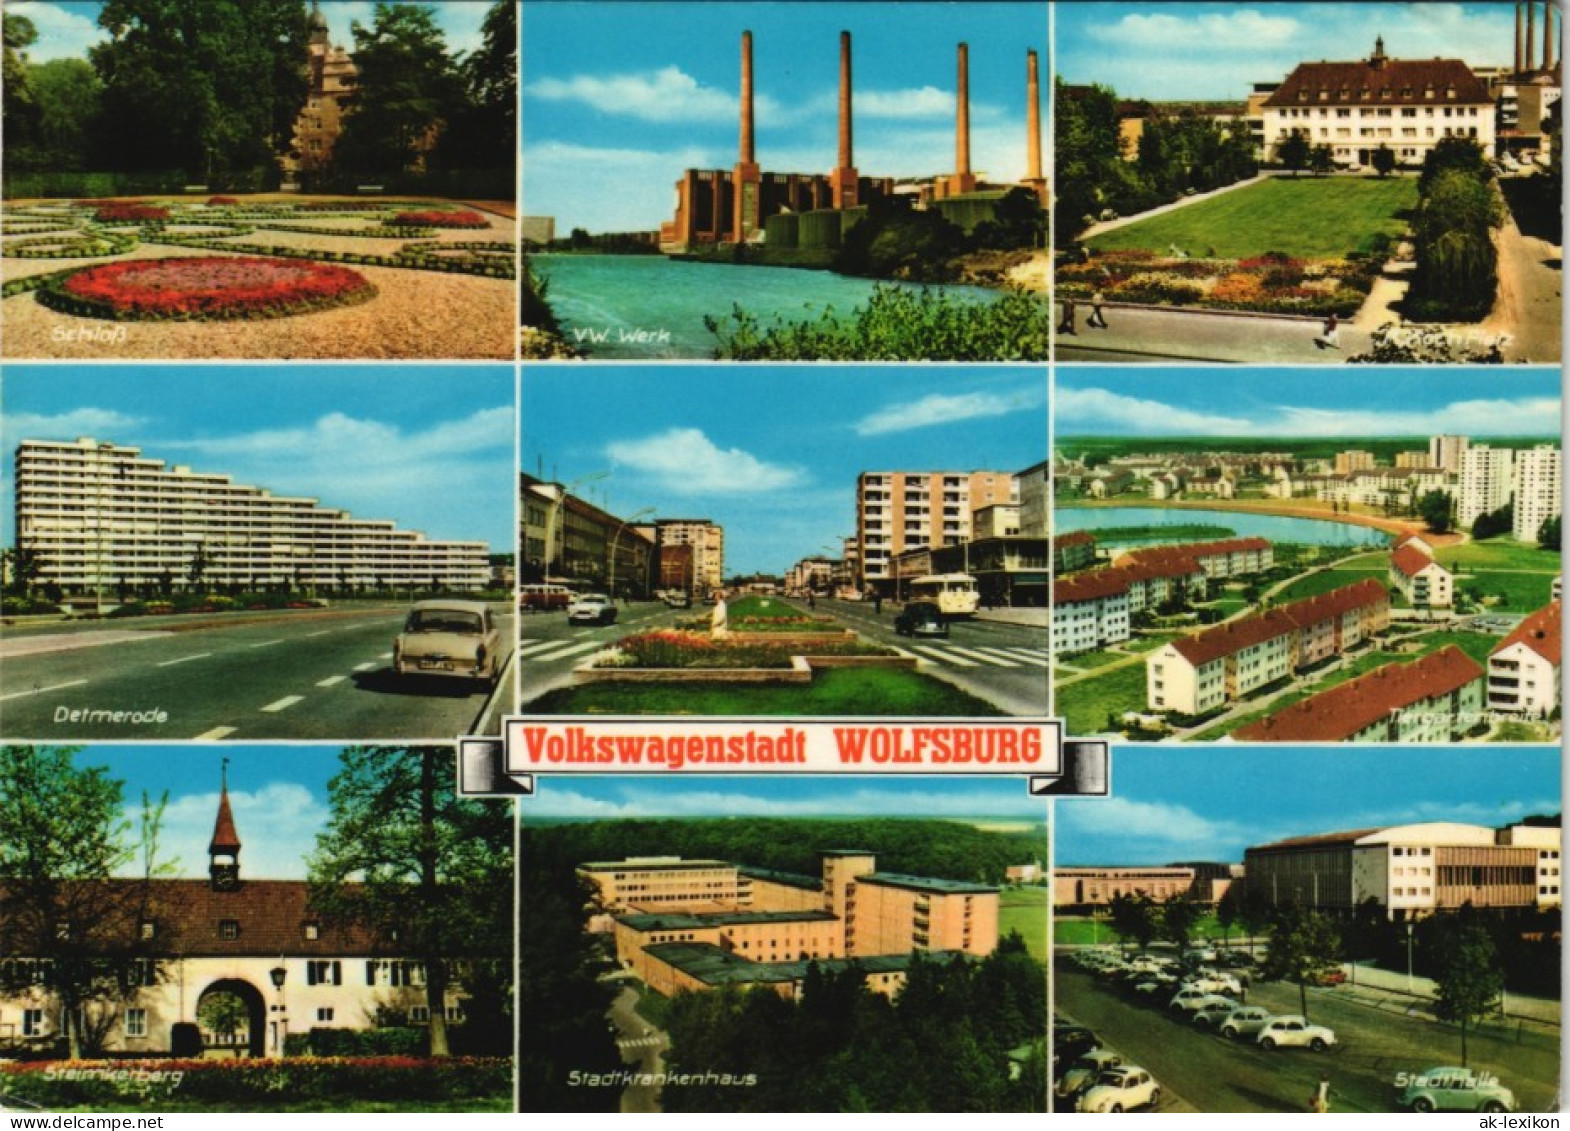 Ansichtskarte Wolfsburg Stadtteilansichten Ua. VW-Werk, Detmerode, Uvm. 1974 - Wolfsburg